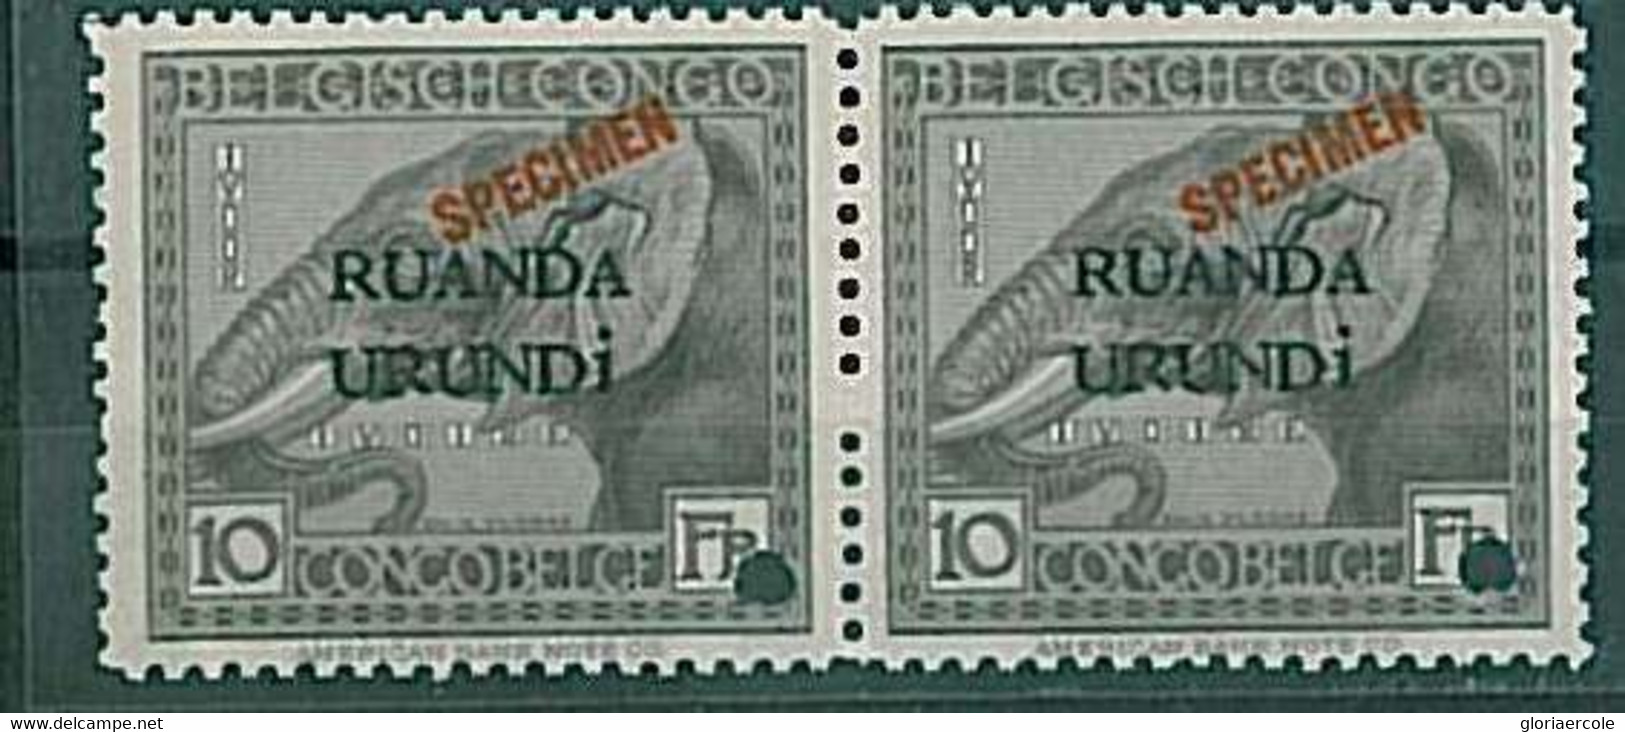 20568 - RUANDA URUNDI - STAMPS : Pair Of SPECIMEN Stamps - ANIMALS: ELEPHANT - Unused Stamps